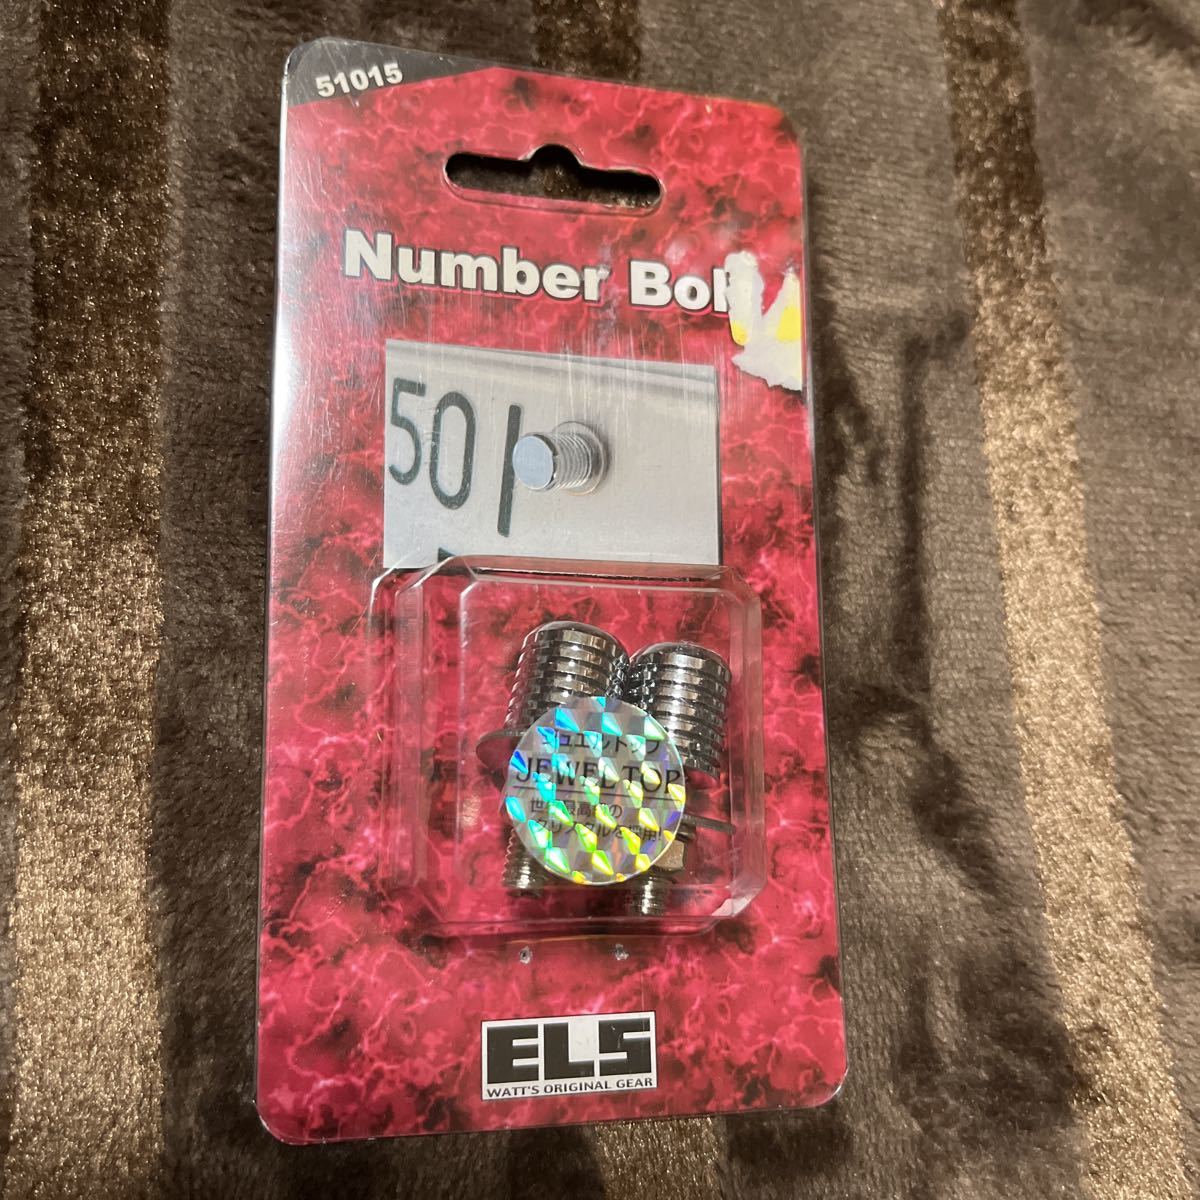 * new goods, unused *ELS number bolt jewel top ELS-51015 L s